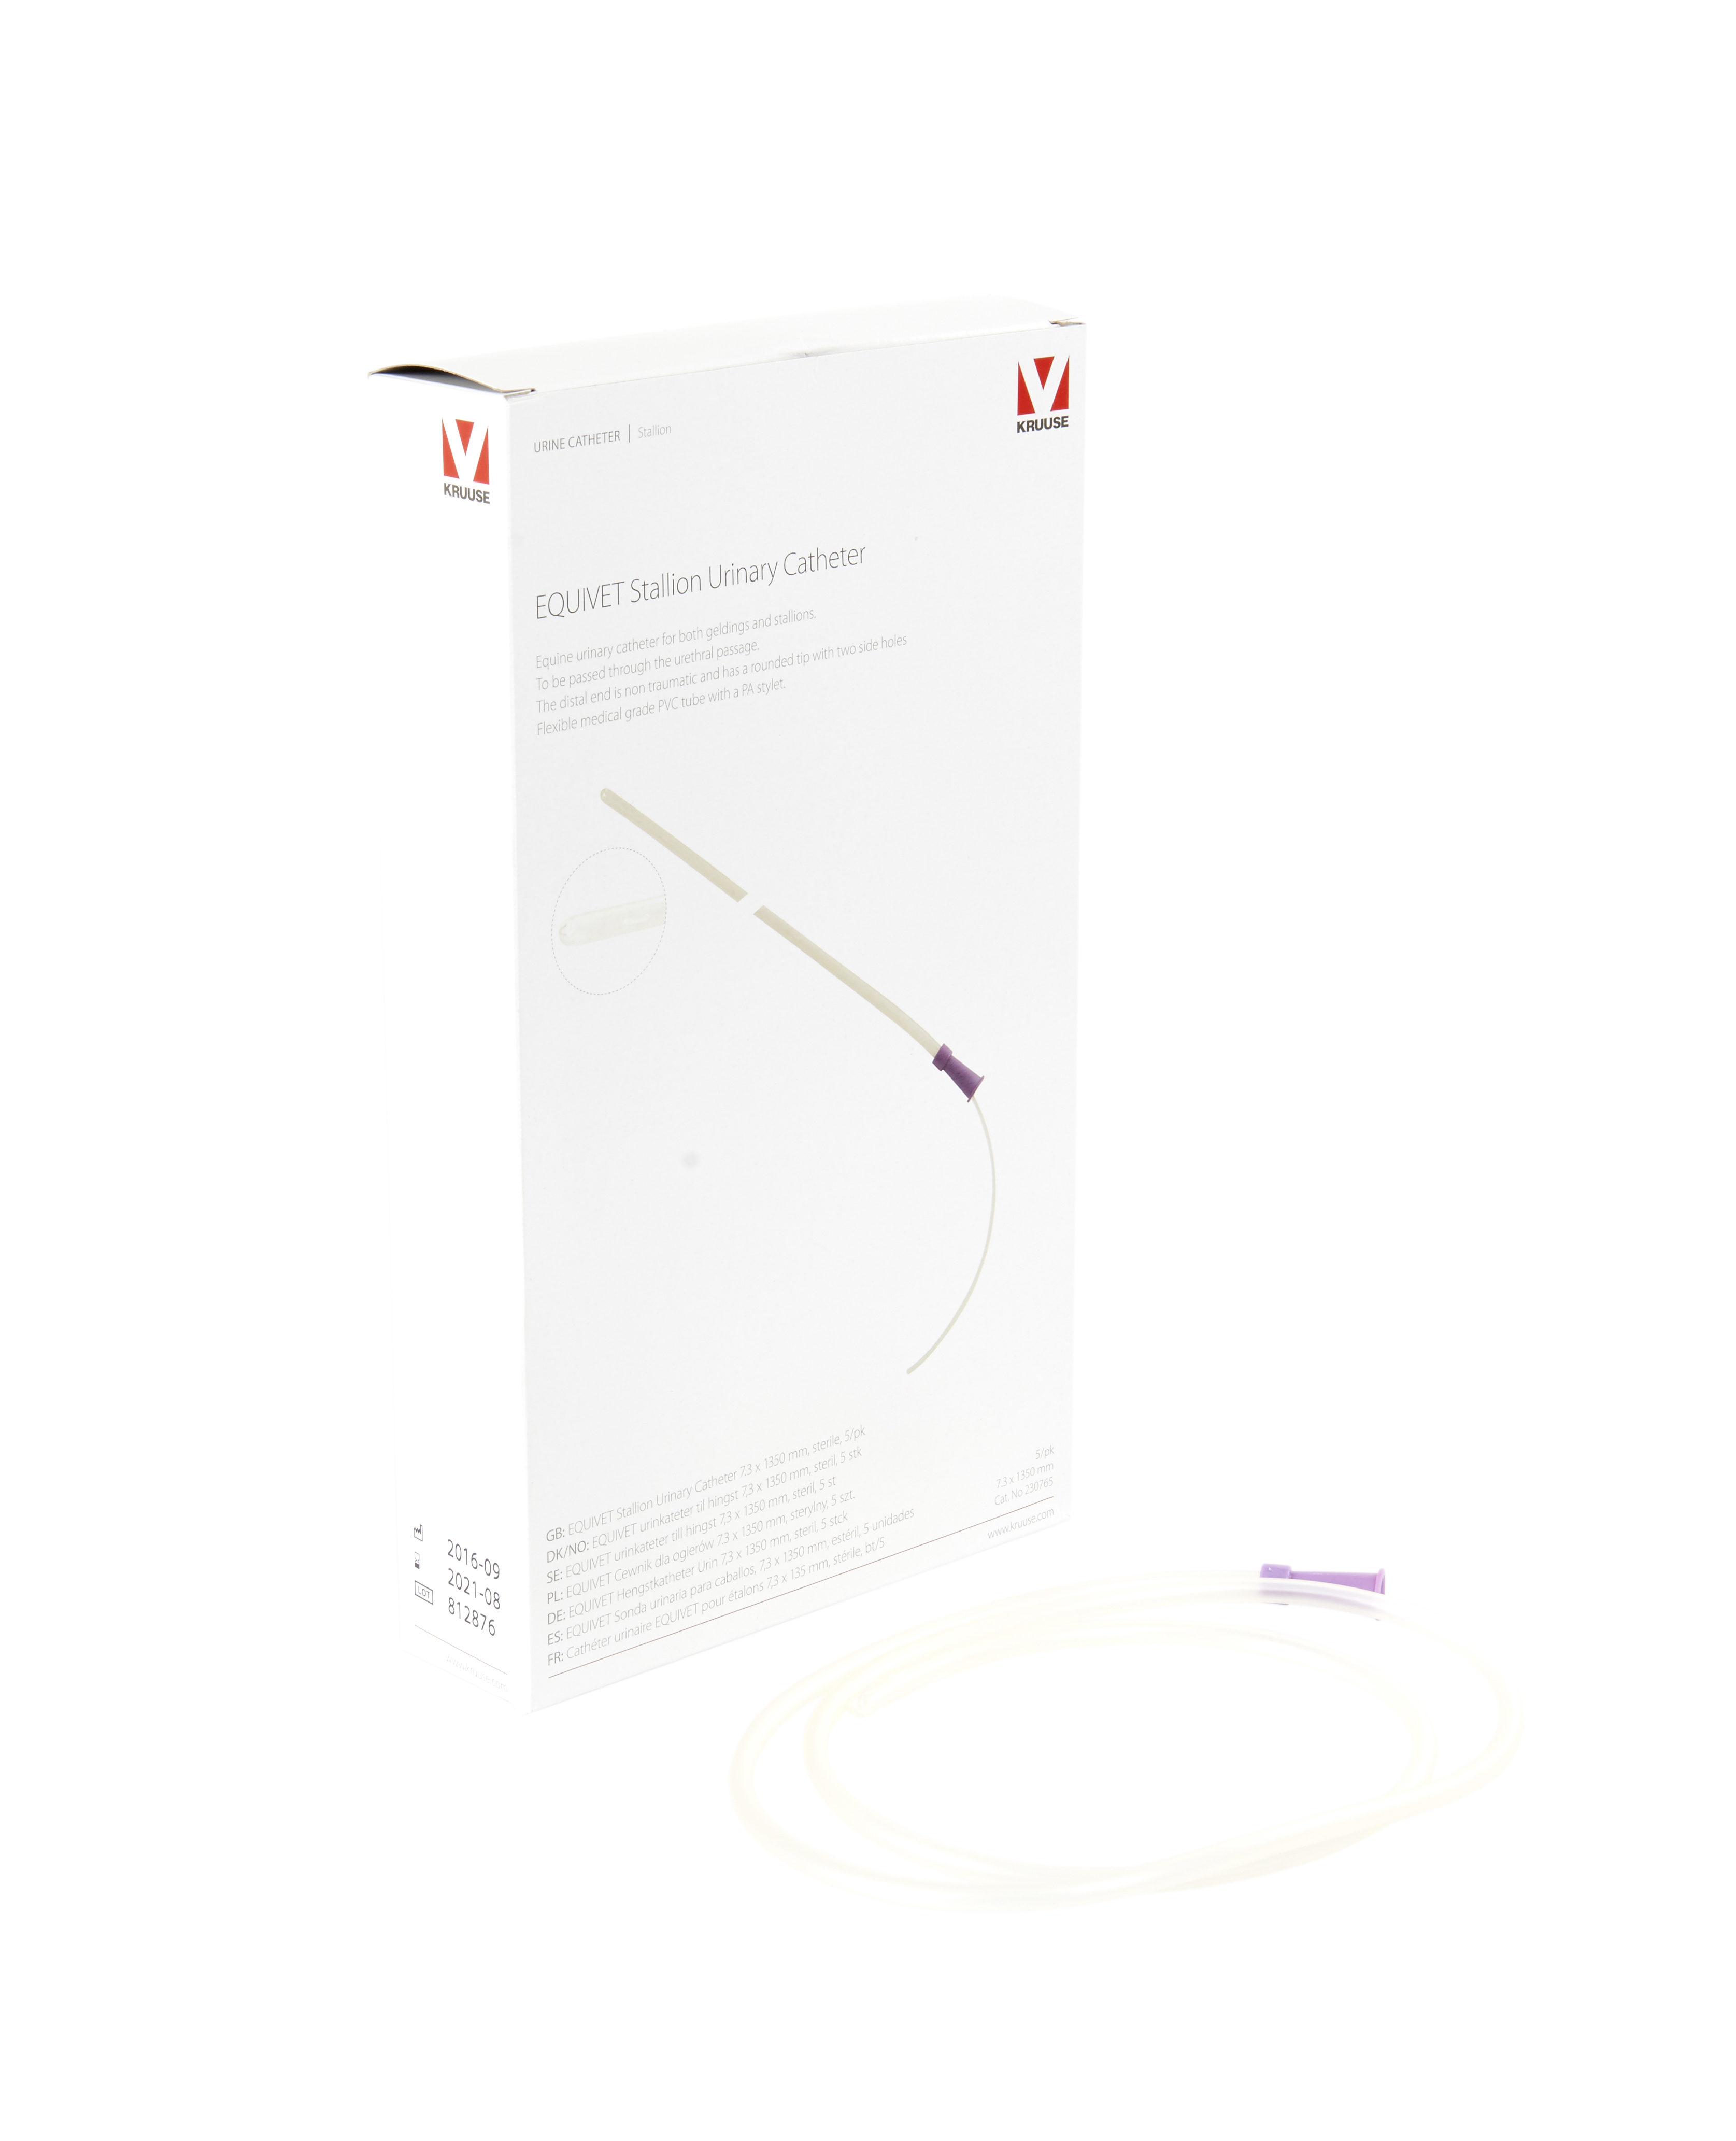 EQUIVET Stallion Urinary Catheter, sterile, 7.3 x 1350 mm, 5/pk